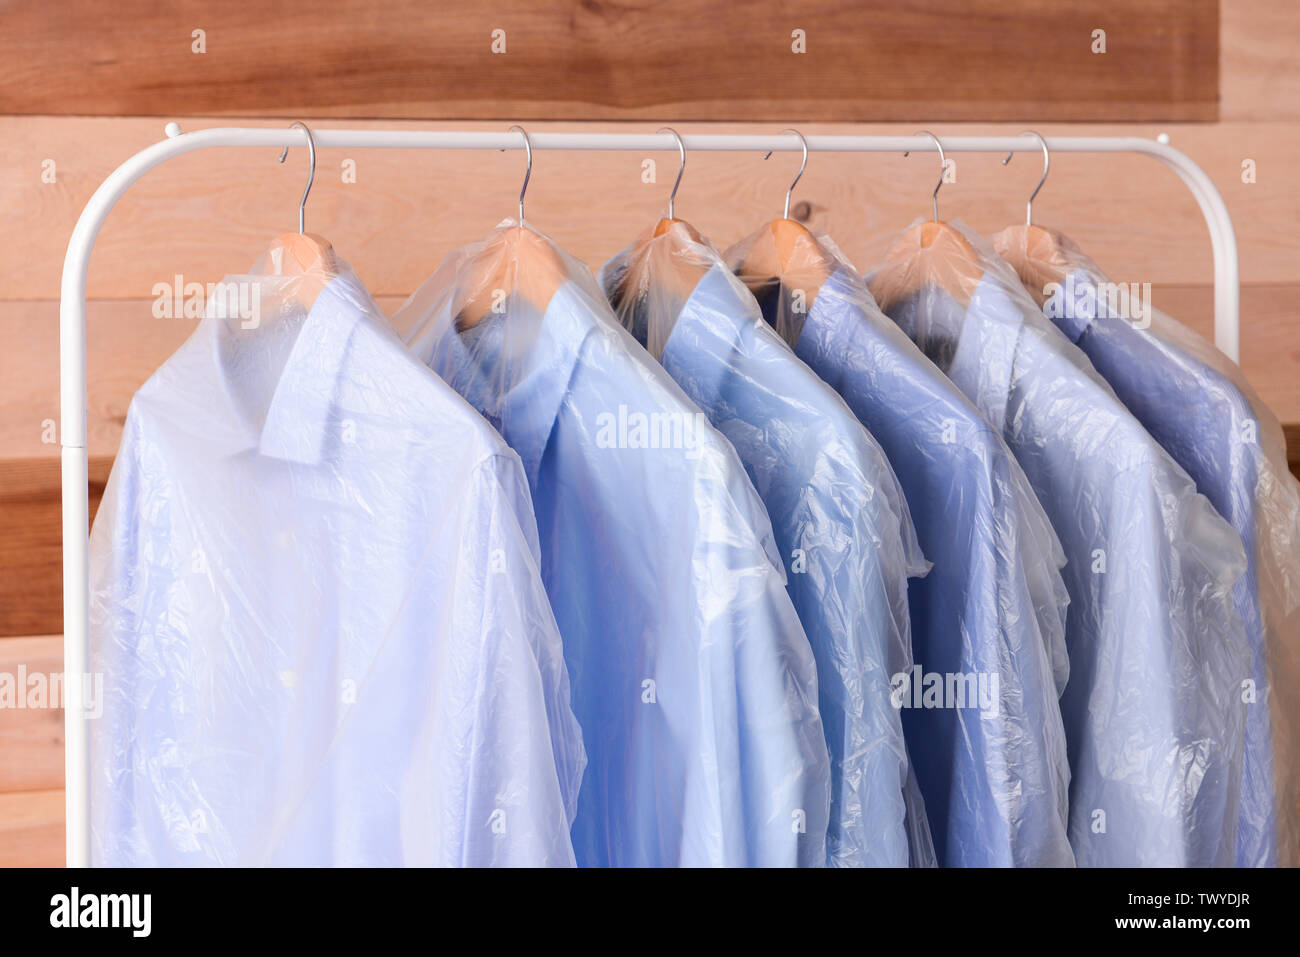 Rack mit Kleidung nach chemische Reinigung auf hölzernen Hintergrund  Stockfotografie - Alamy